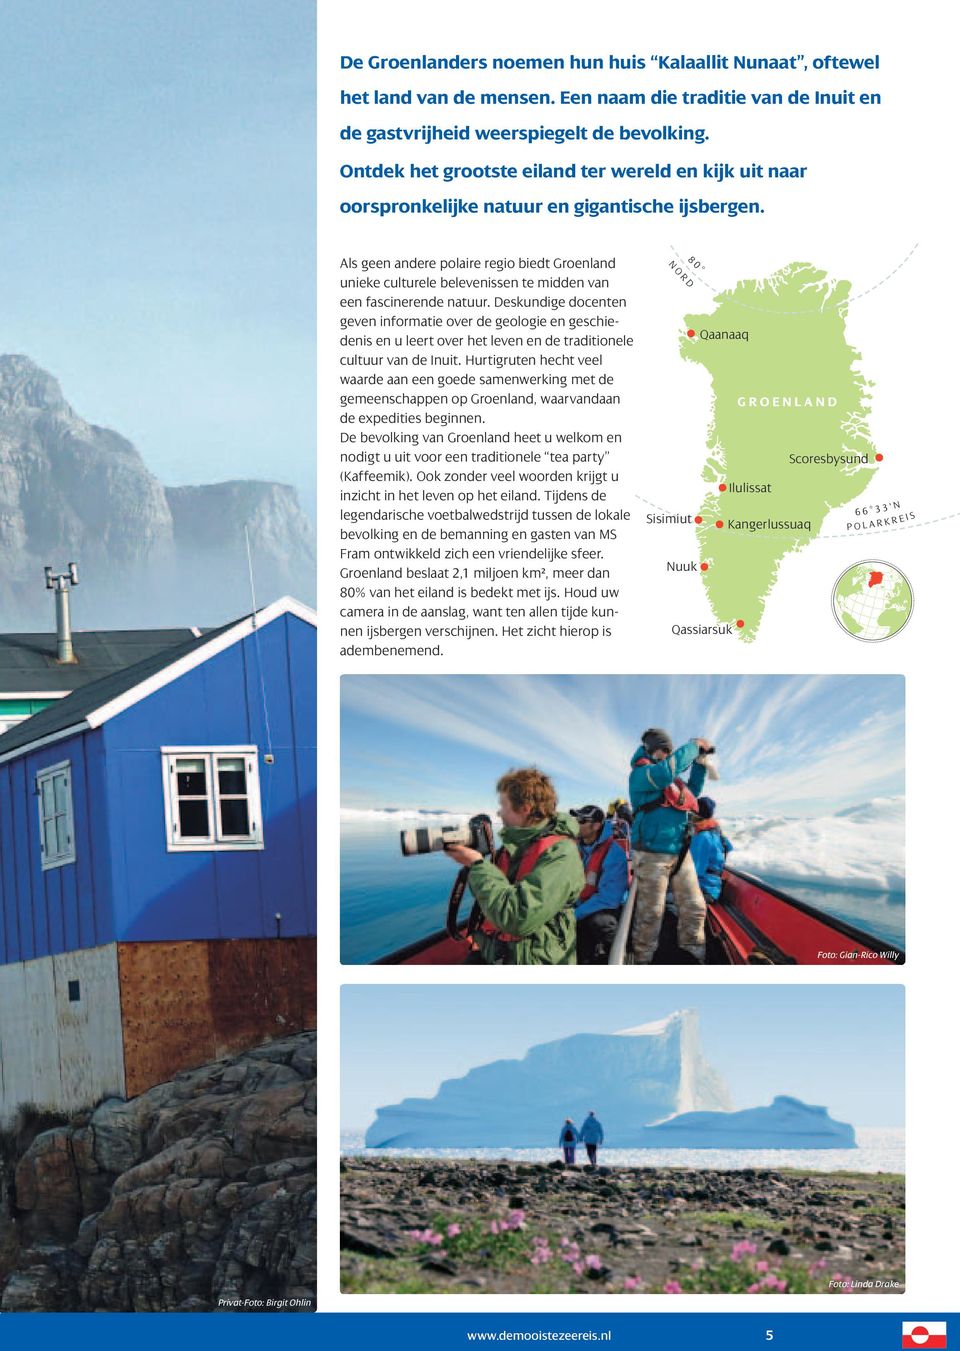 Als geen andere polaire regio biedt Groenland unieke culturele belevenissen te midden van een fascinerende natuur.